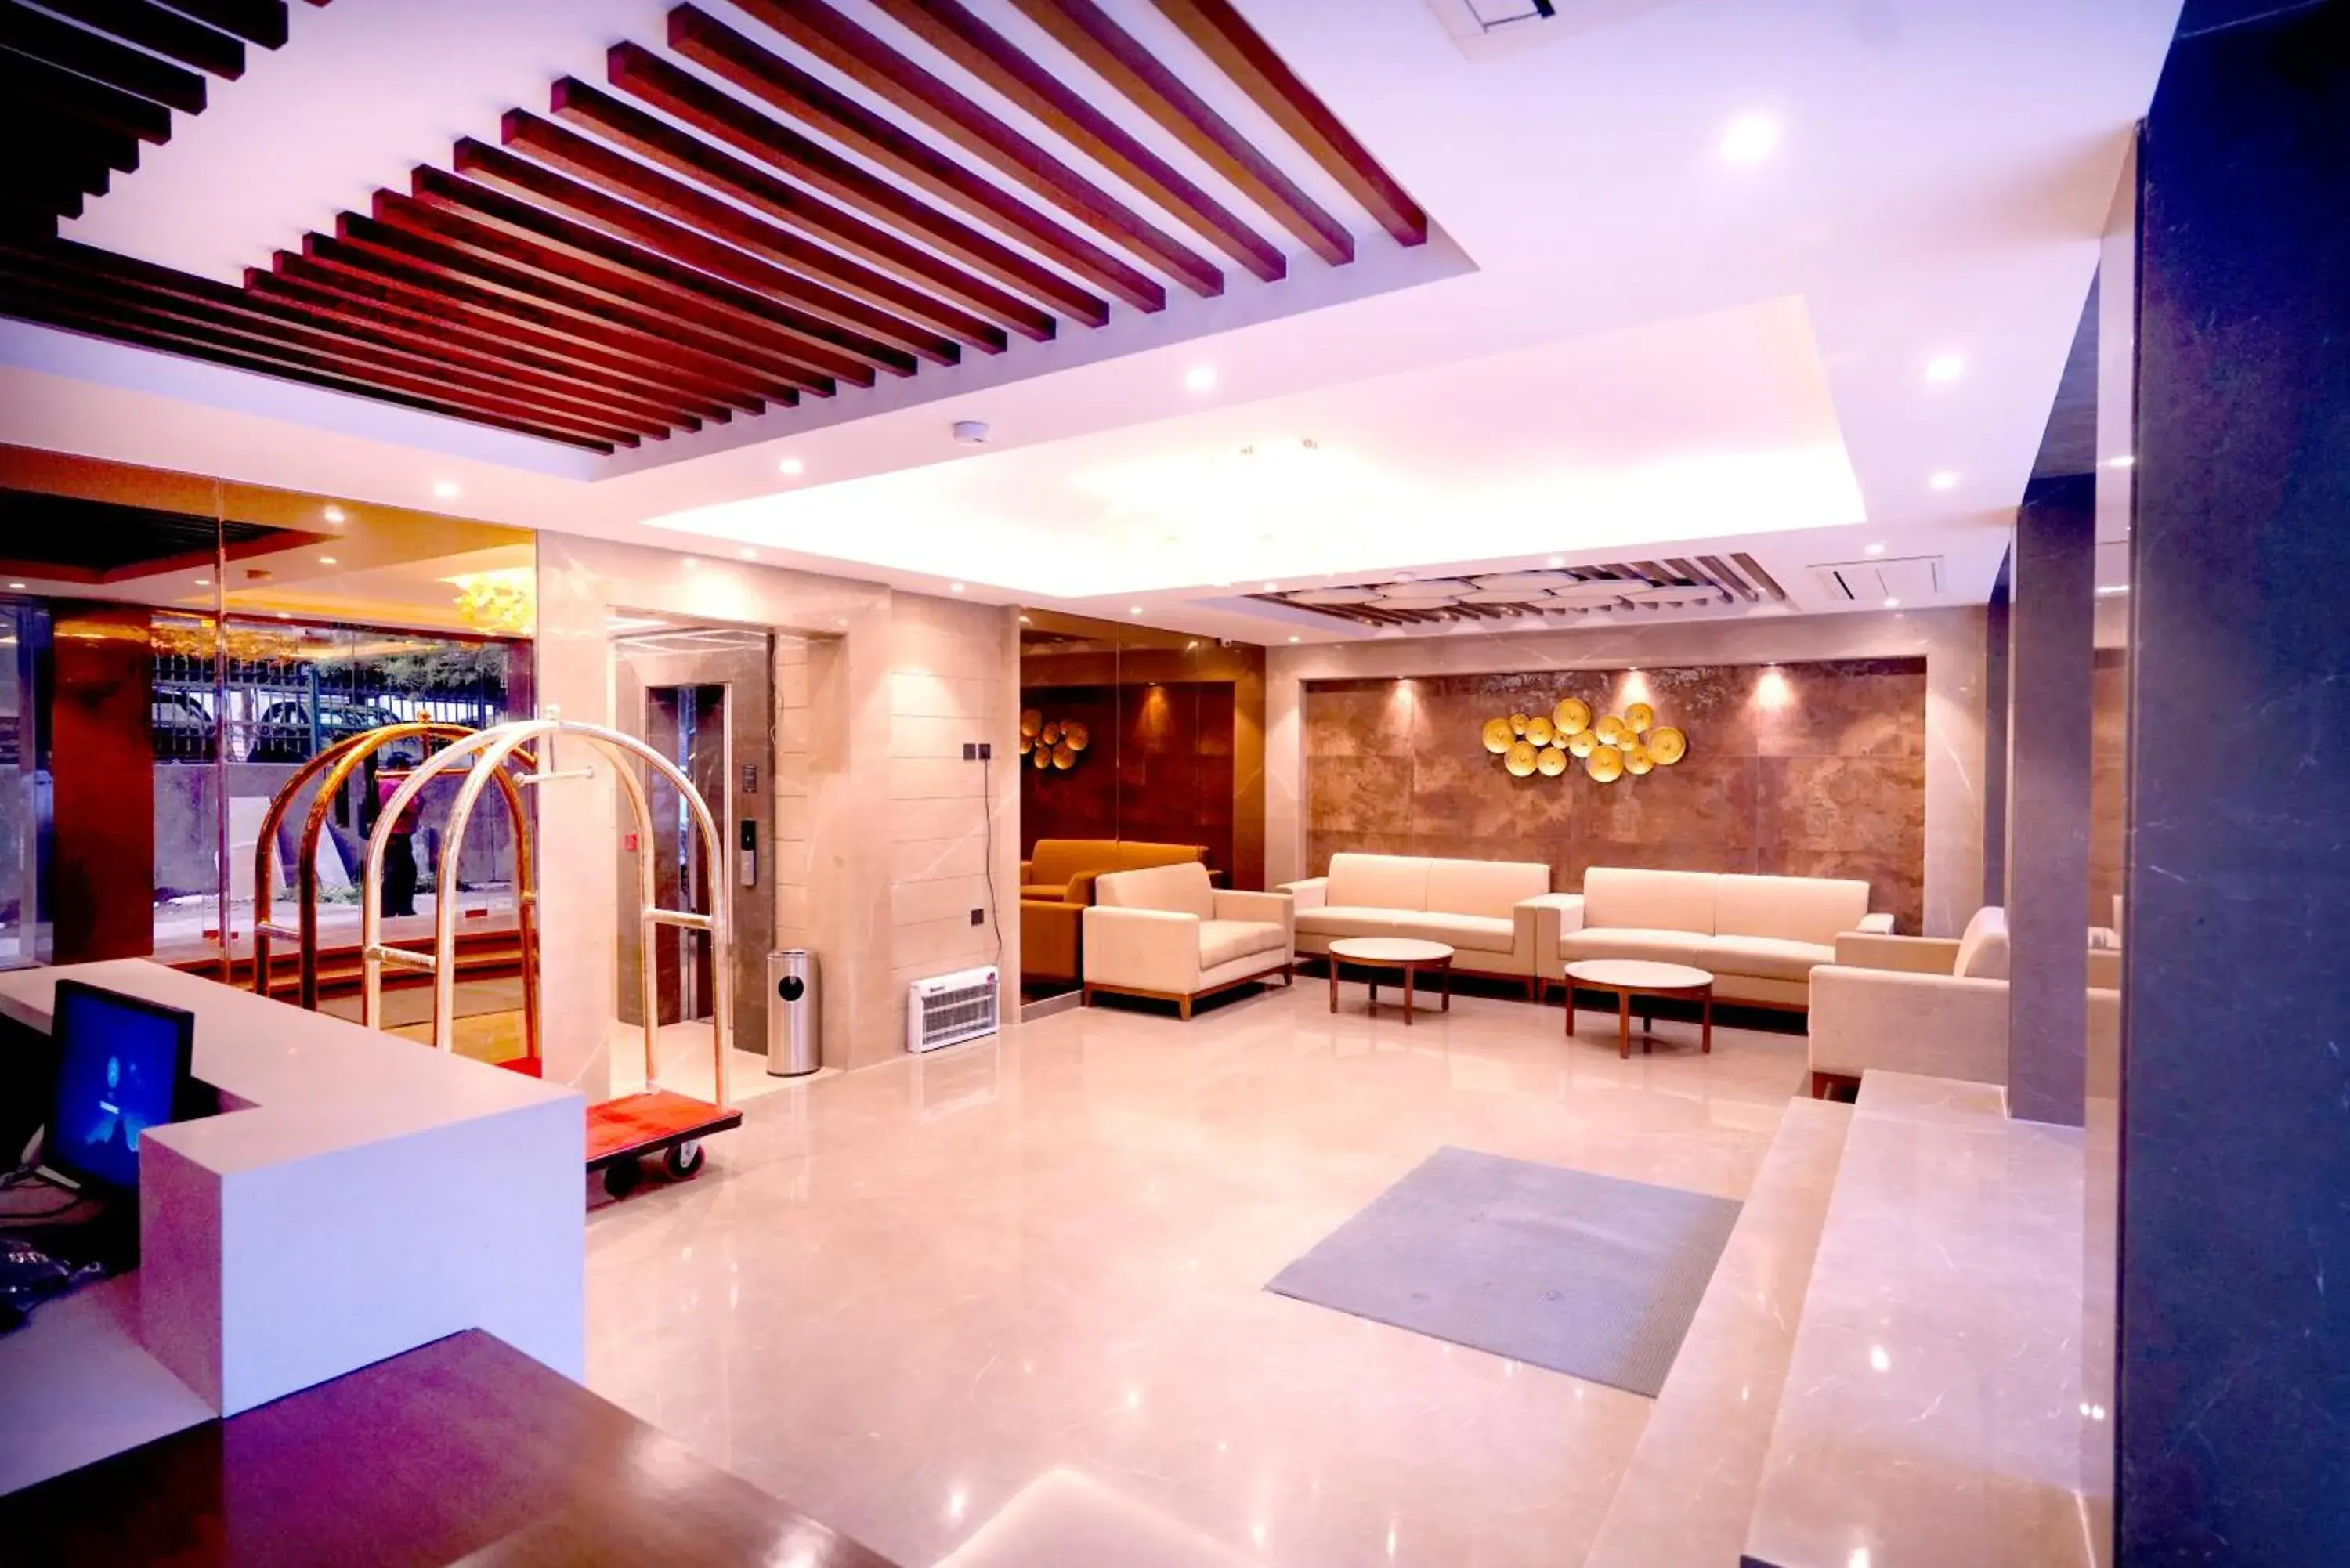 Lobby or reception, Lobby/Reception in Hotel Ritz